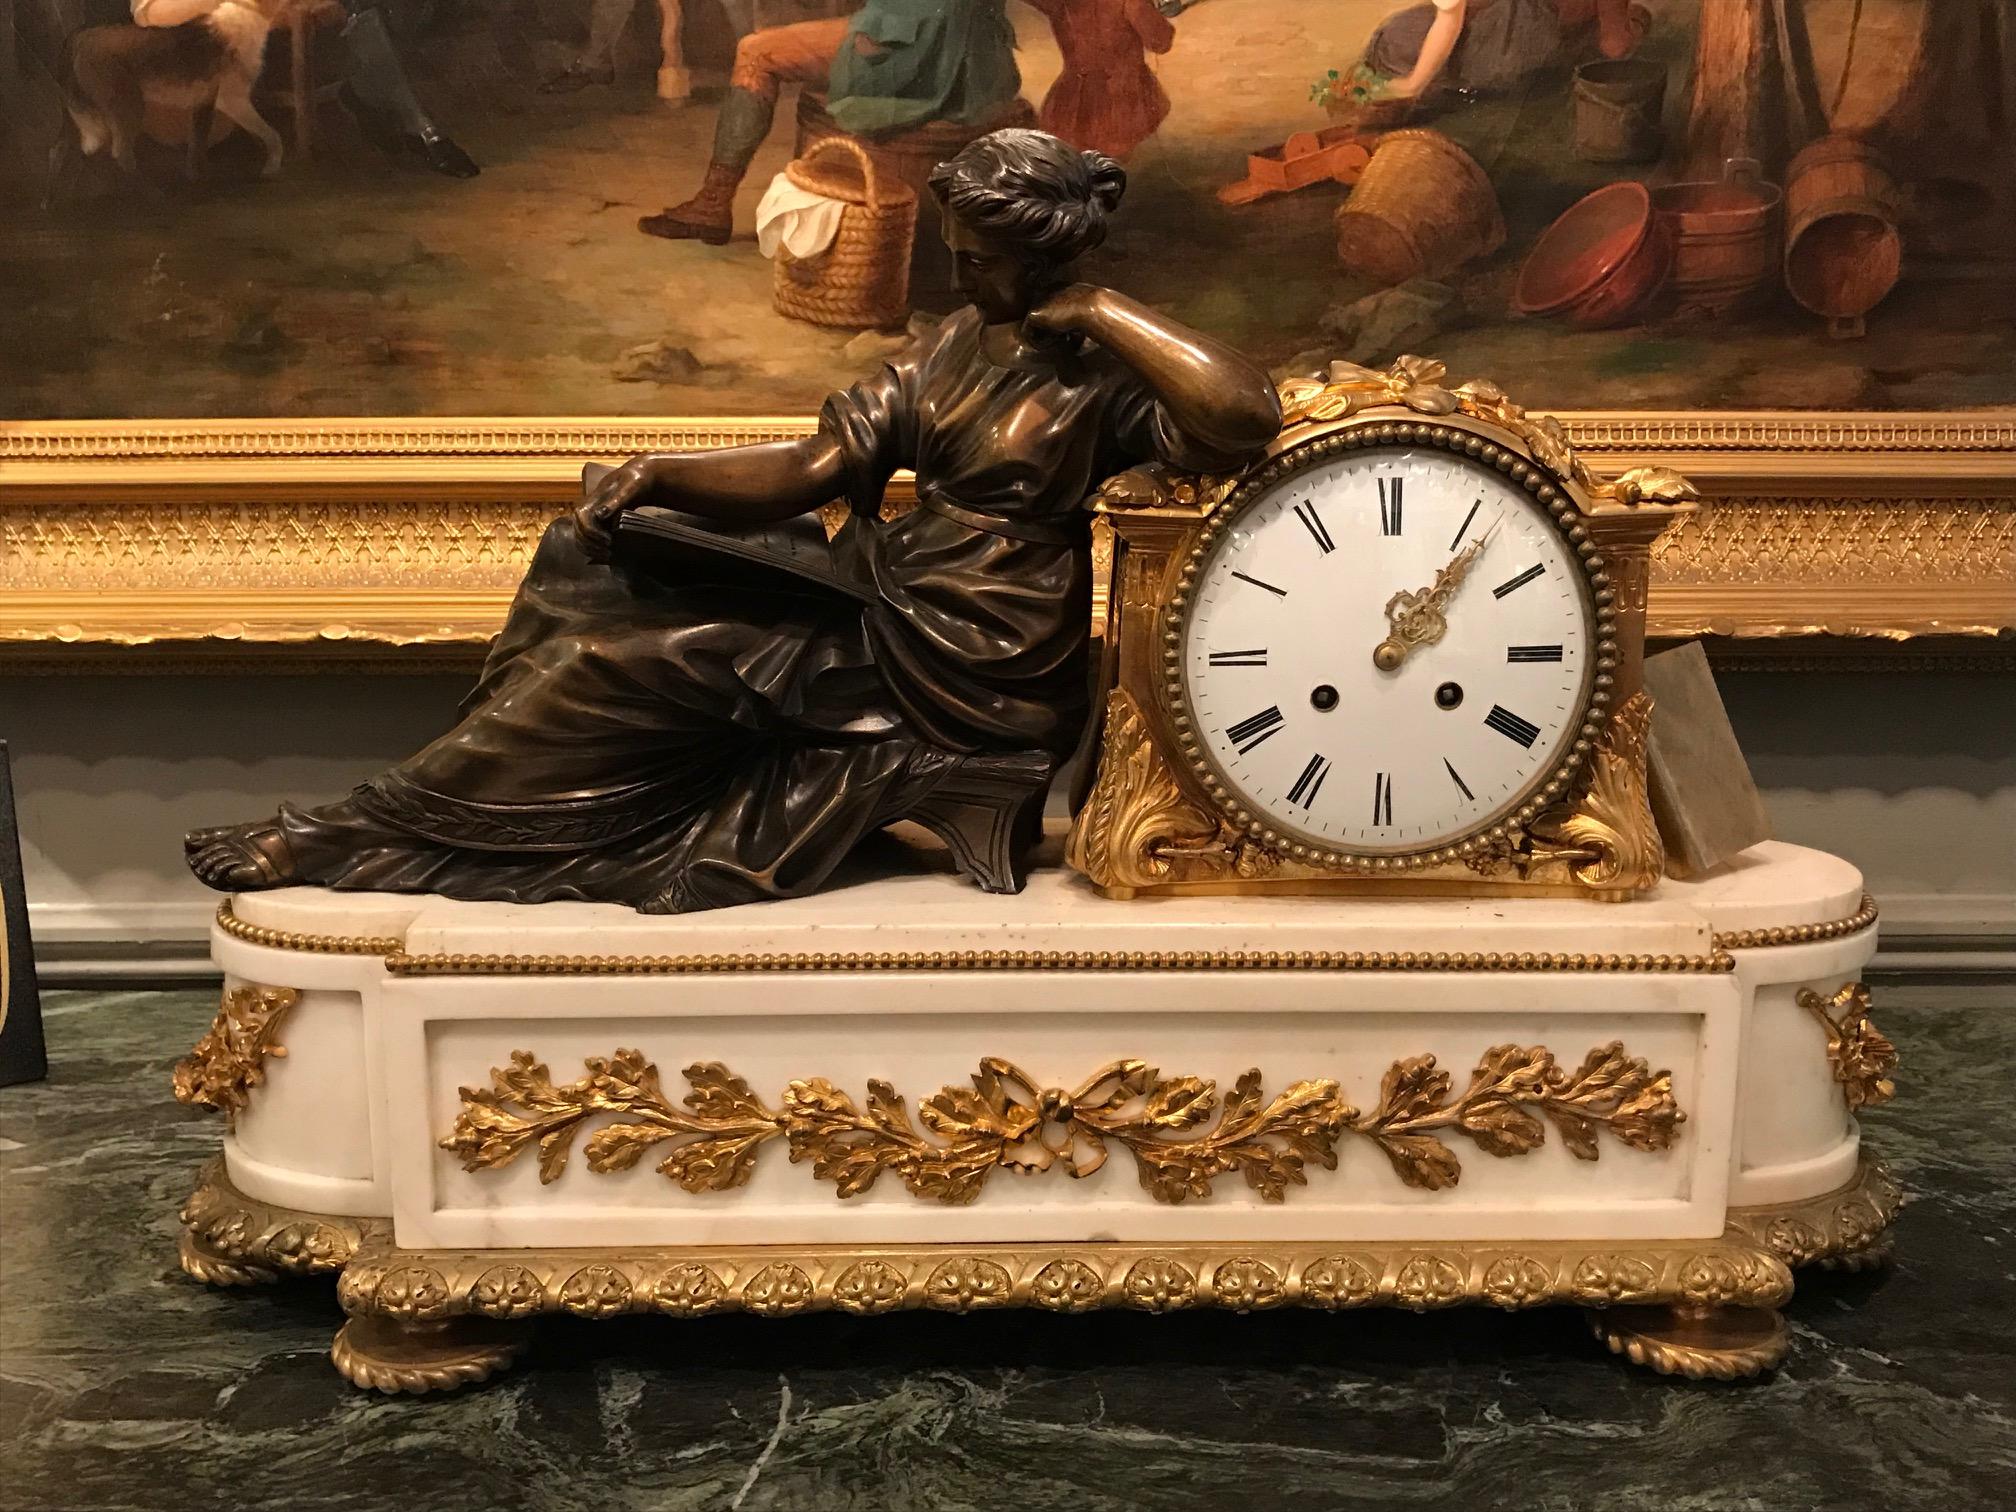 Ein feines 19. Jahrhundert neoklassischen statuarischen weißem Marmor und vergoldeter Bronze figuralen Mantel Uhr, die fein gegossen patiniert klassischen weiblichen in sitzender Pose neben vergoldeter Bronze Uhr der runden Form mit Perlen,